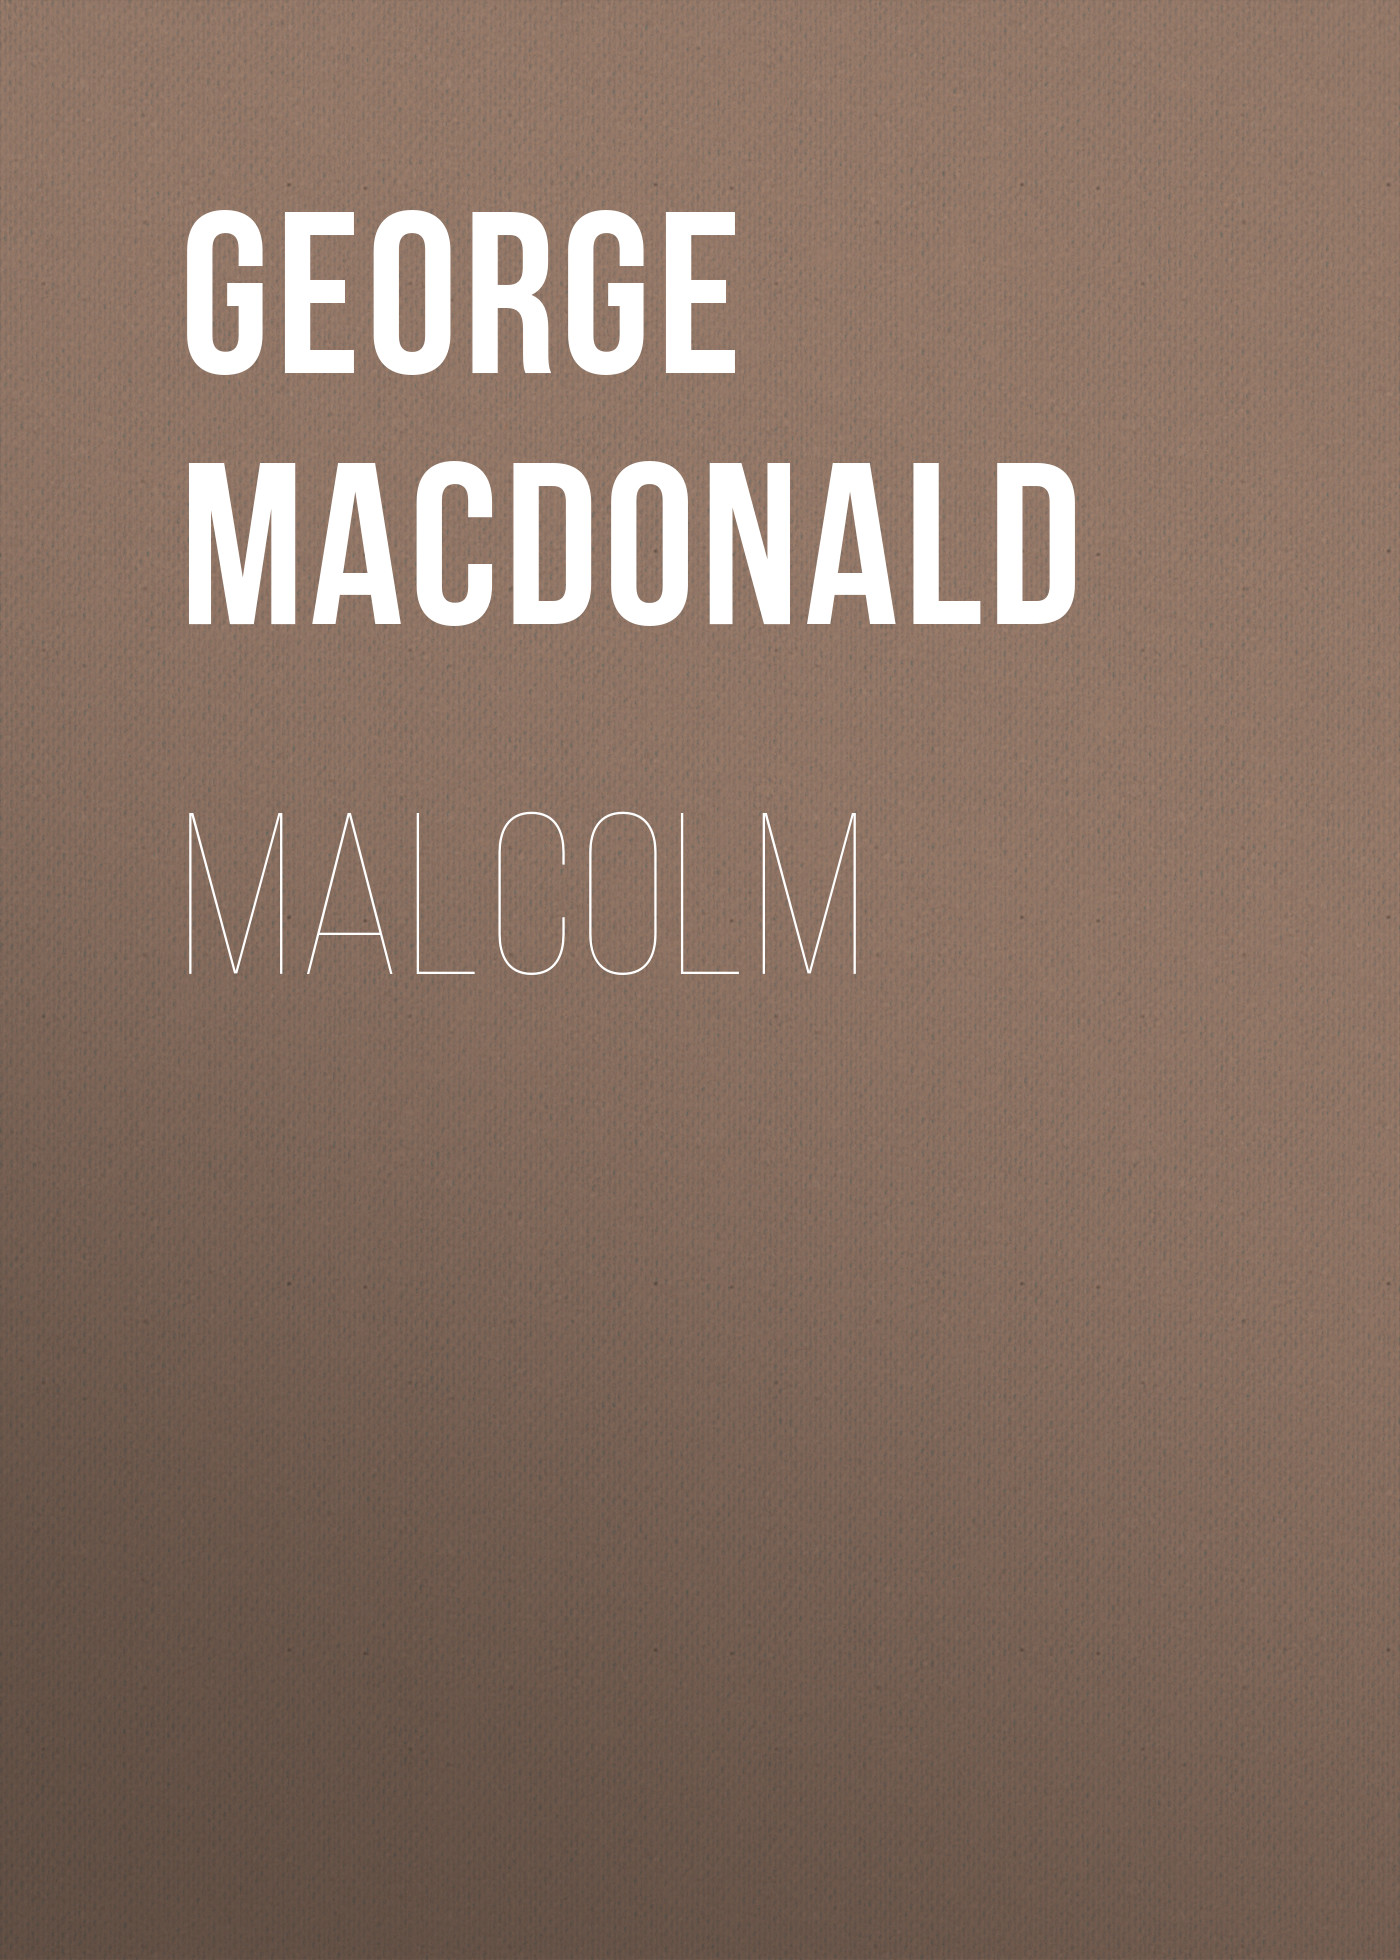 Книга Malcolm из серии , созданная George MacDonald, может относится к жанру Зарубежные любовные романы. Стоимость электронной книги Malcolm с идентификатором 35007921 составляет 0 руб.